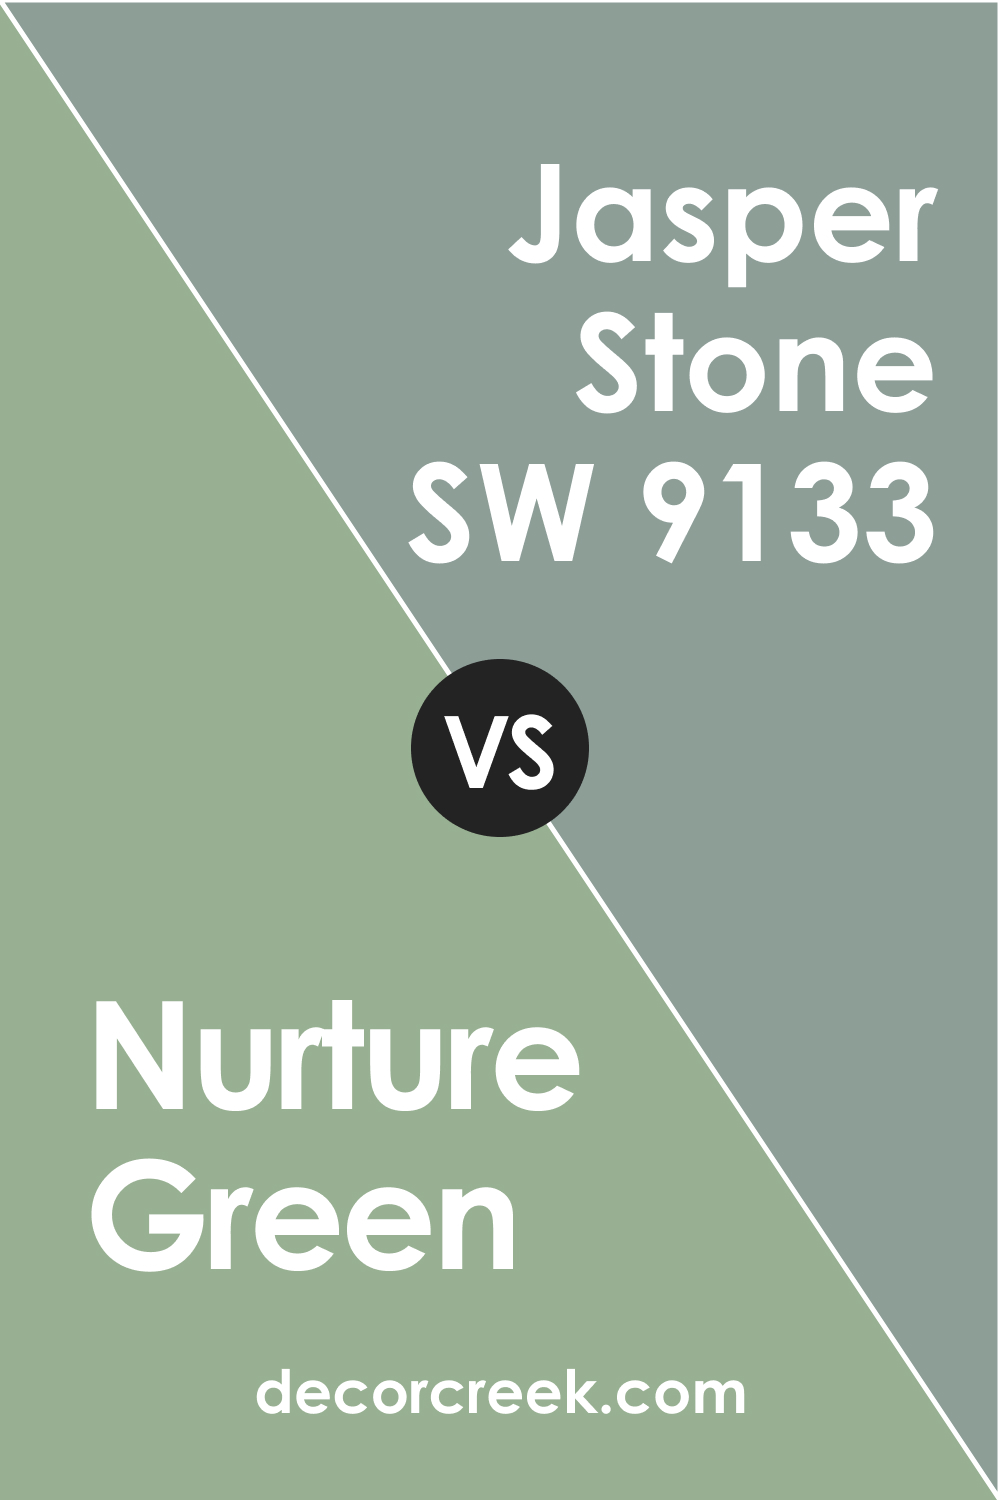 Nurture Green vs Jasper Stone